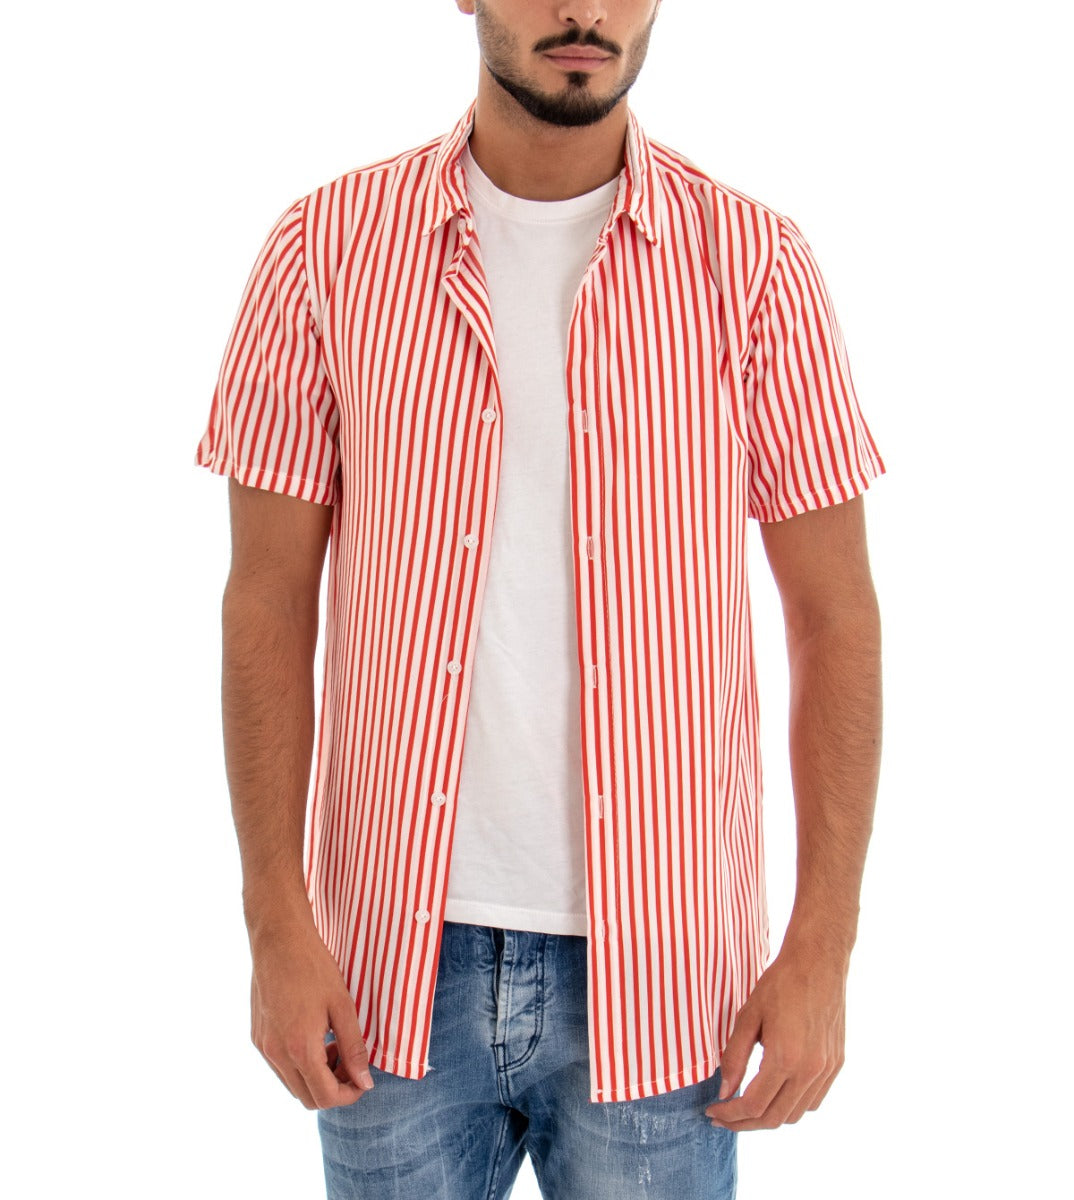 Camicia Manica Corta Uomo Colletto Righe Rigata Rosso Bianco GIOSAL-CC1080A